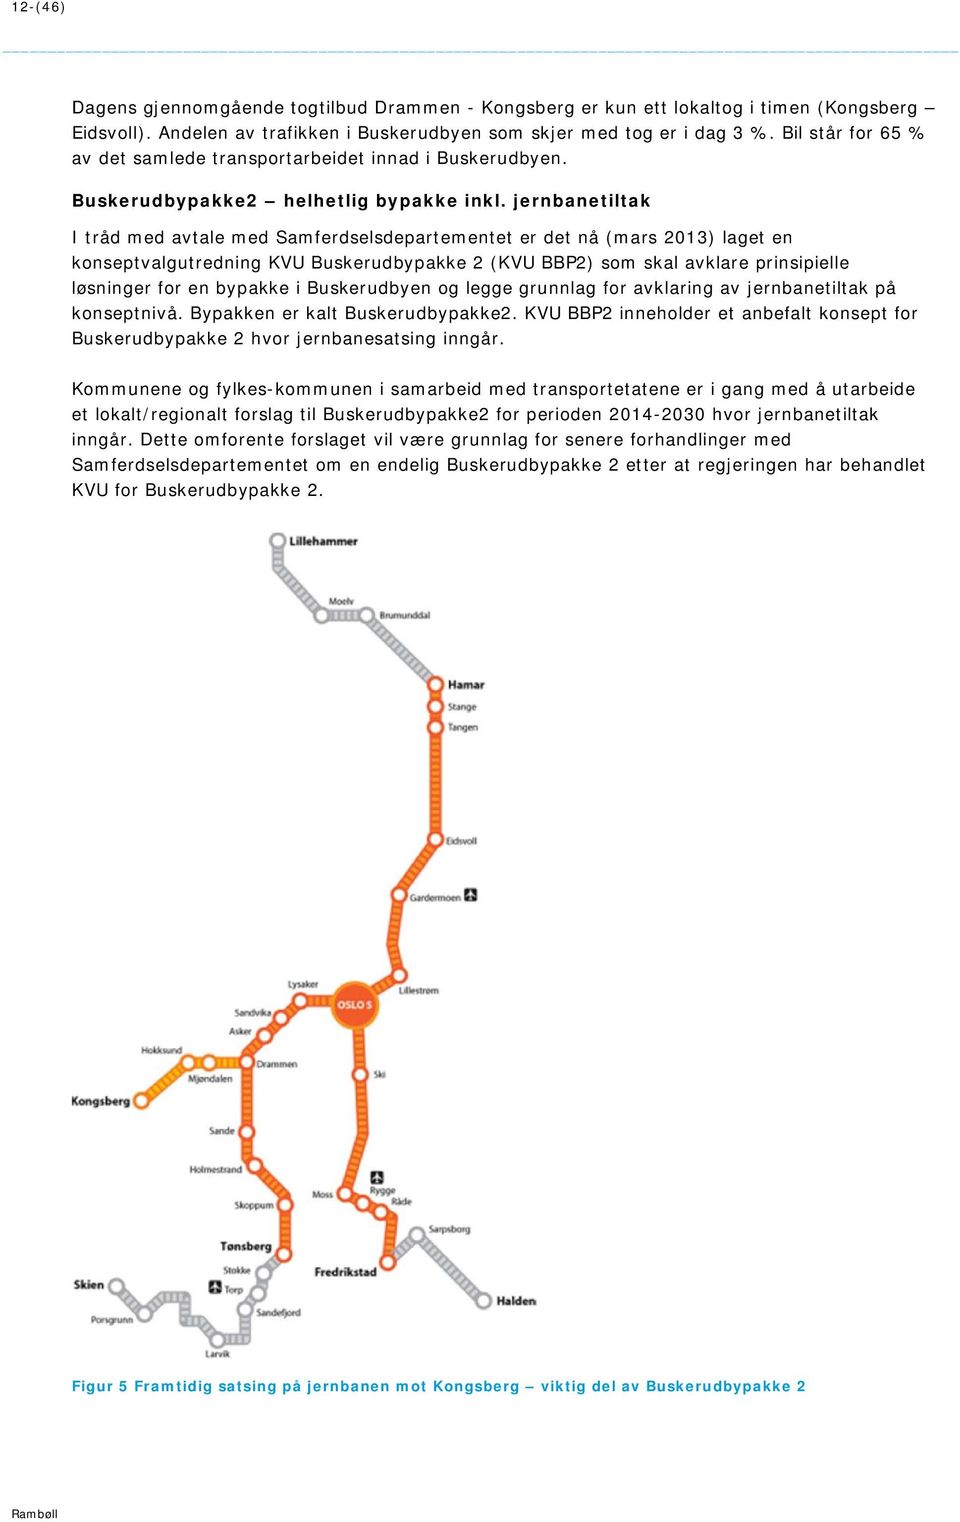 jernbanetiltak I tråd med avtale med Samferdselsdepartementet er det nå (mars 2013) laget en konseptvalgutredning KVU Buskerudbypakke 2 (KVU BBP2) som skal avklare prinsipielle løsninger for en